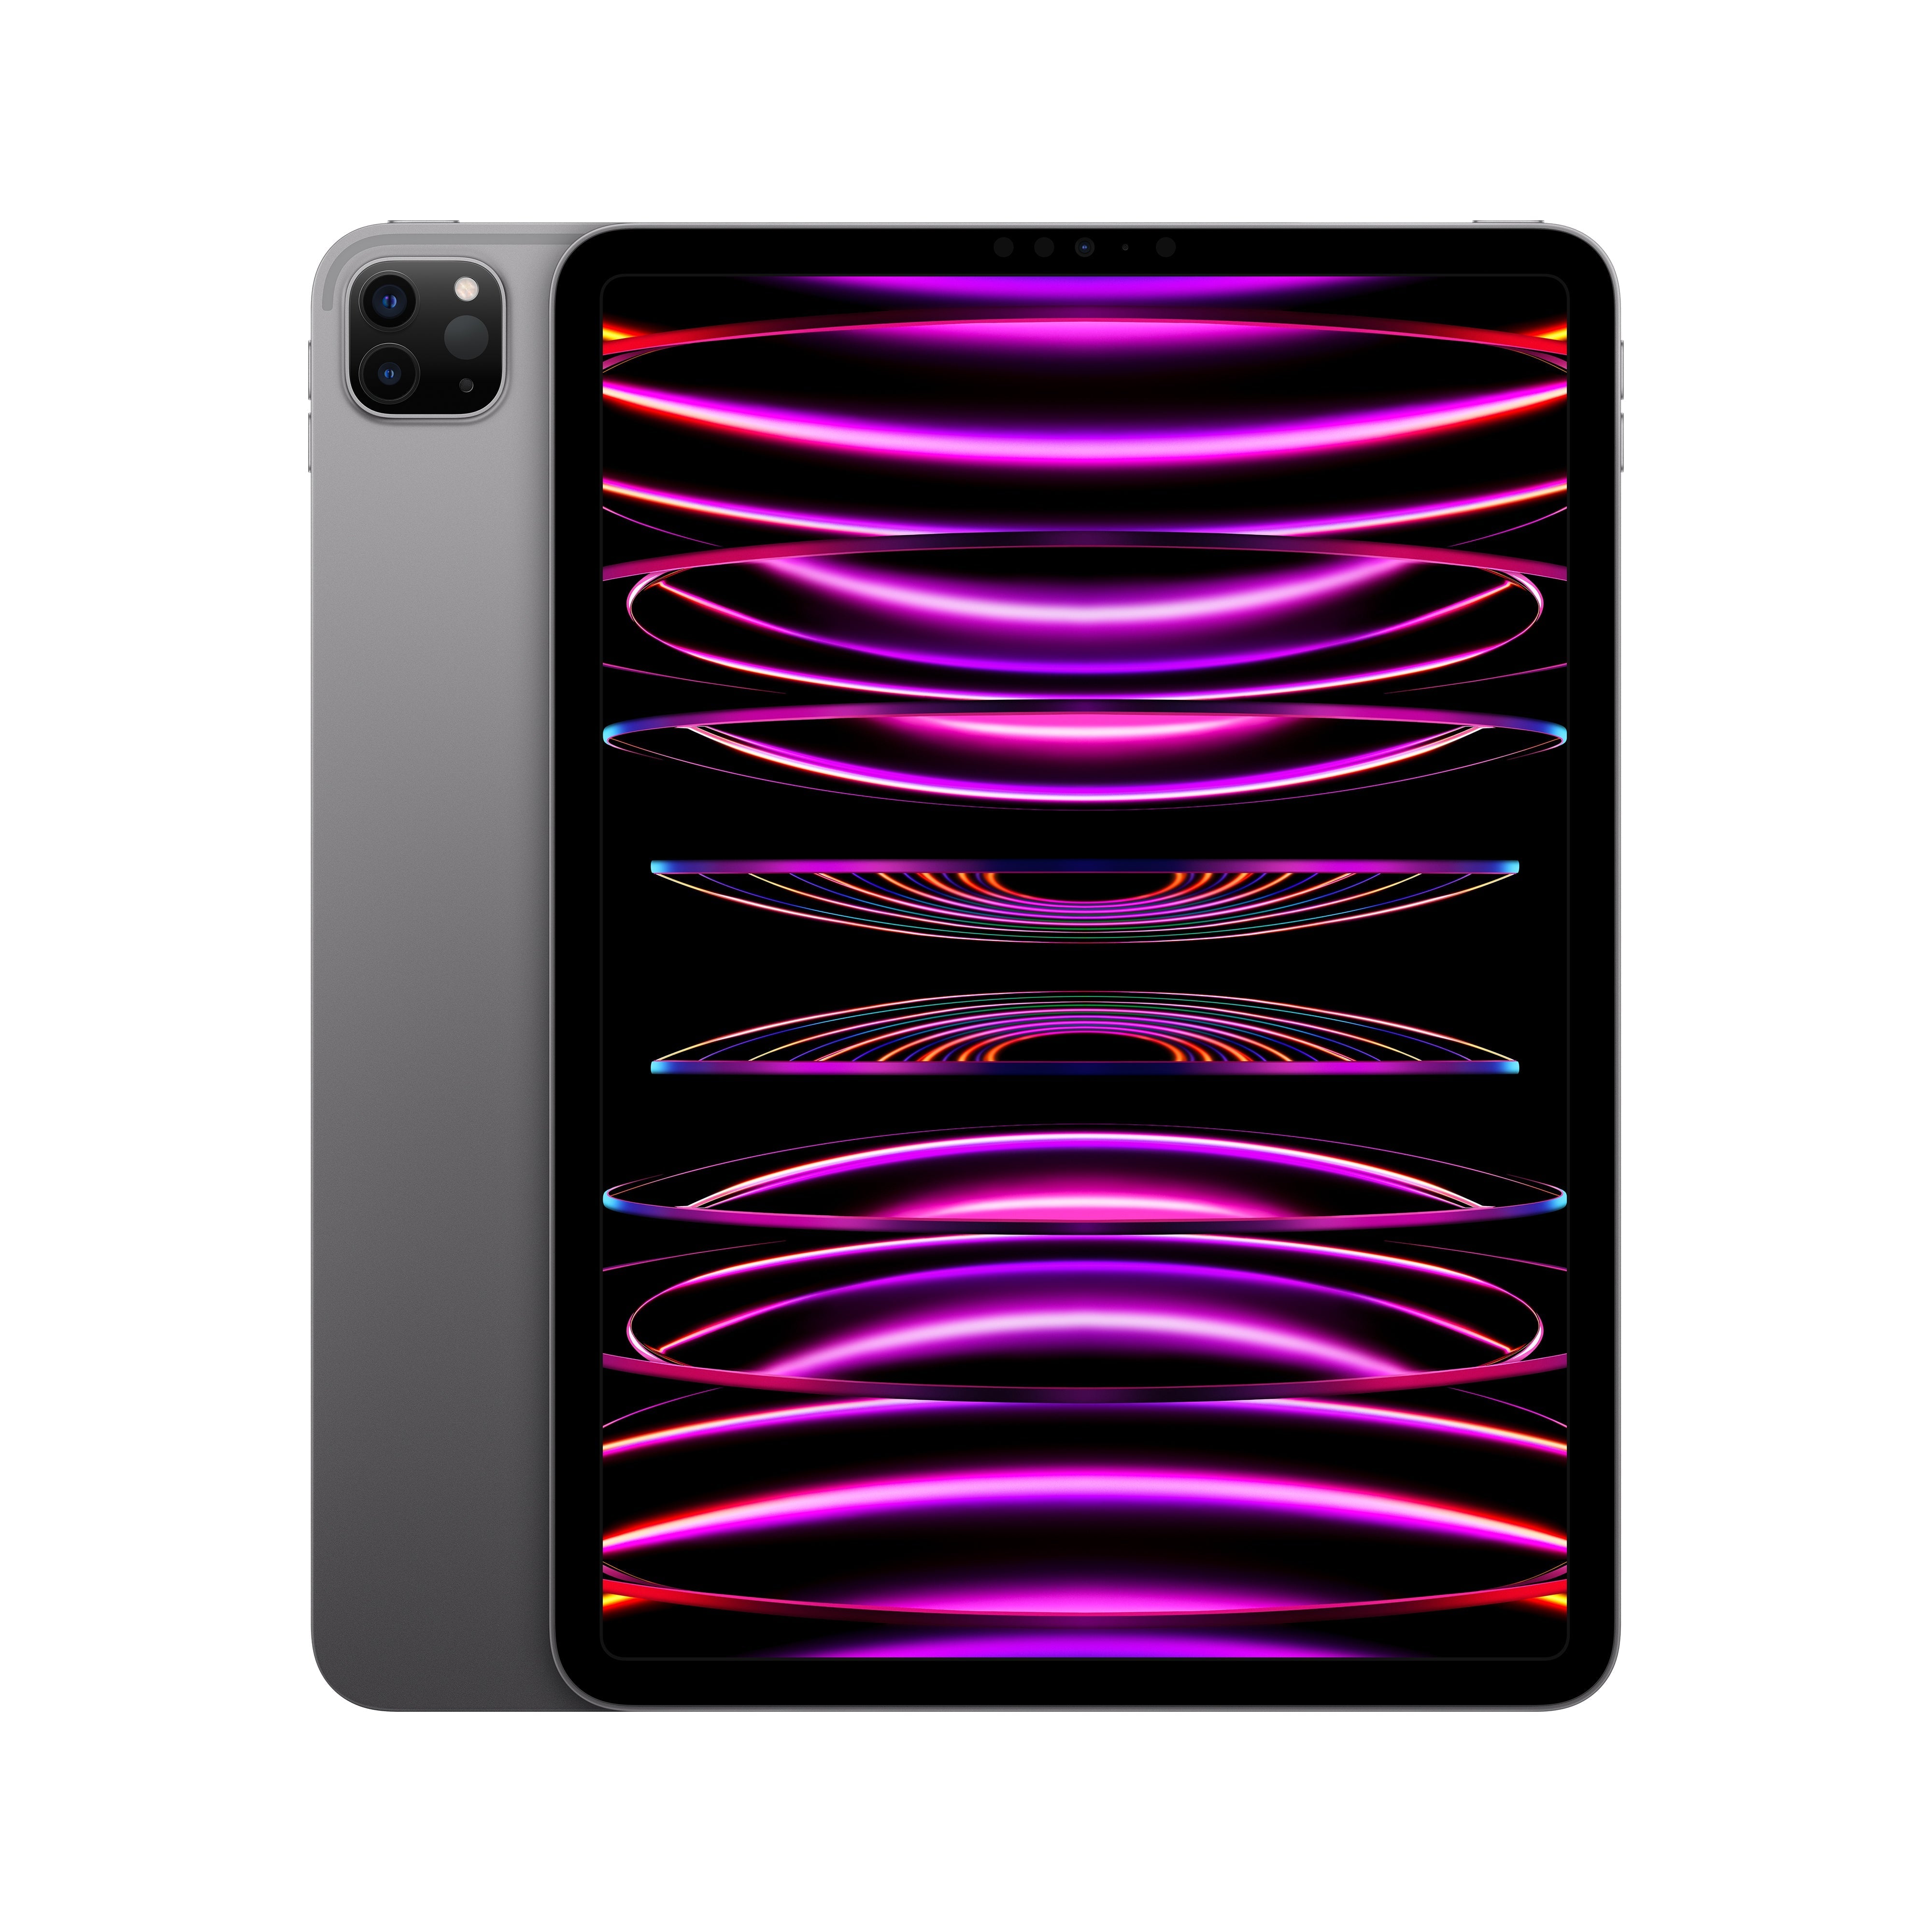 iPad Pro 11in (4th Gen) Wi-Fi 512GB - Space Grey